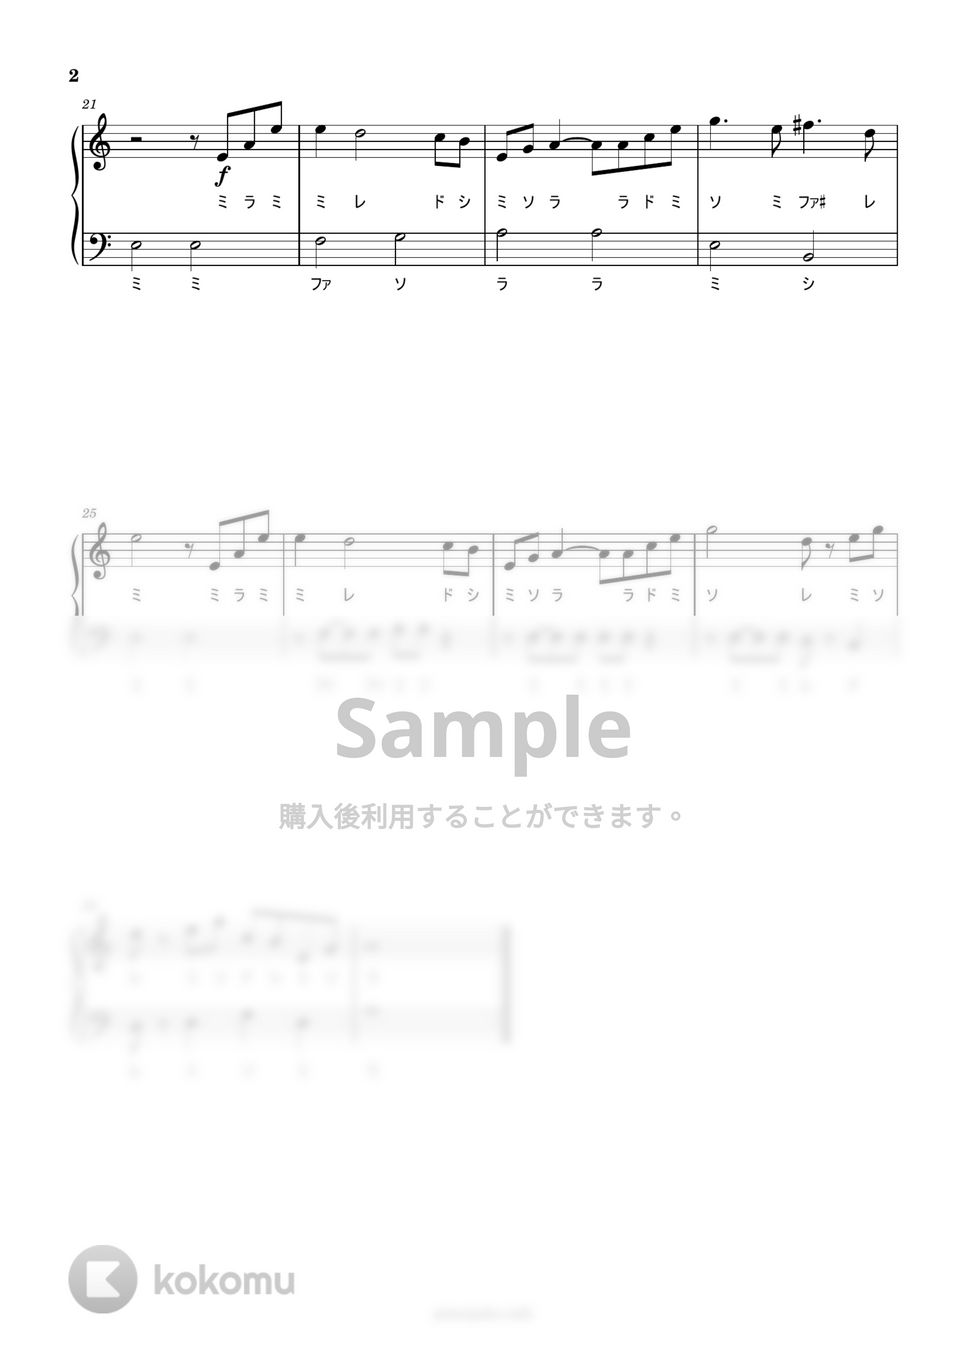 久石譲 - アシタカせっ記 (ドレミ付き簡単楽譜) by ピアノ塾